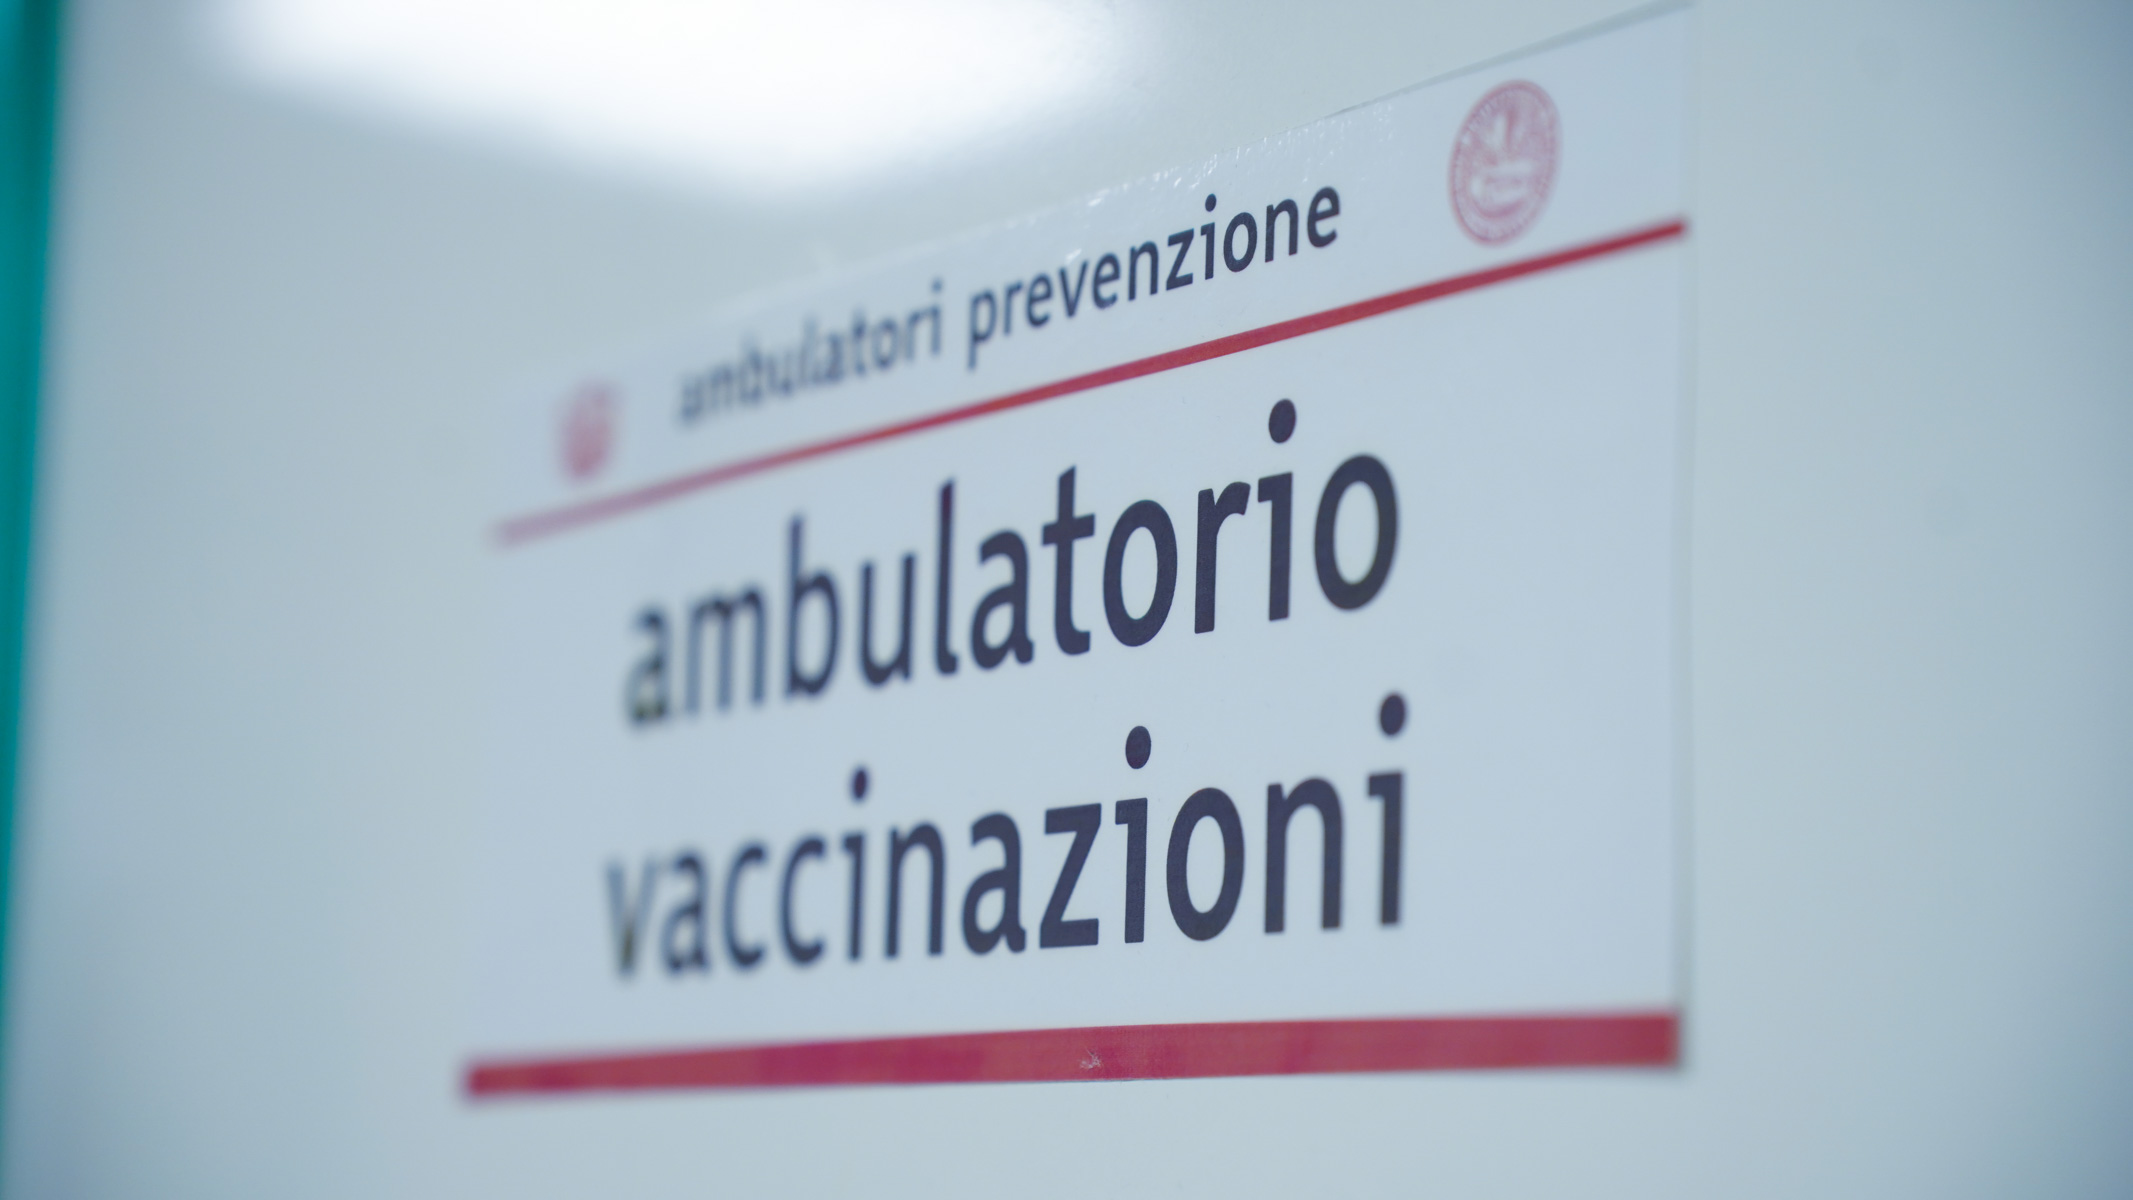 Galleria Palese: “Sollecitiamo tutti ad effettuare la vaccinazione” - Diapositiva 2 di 10